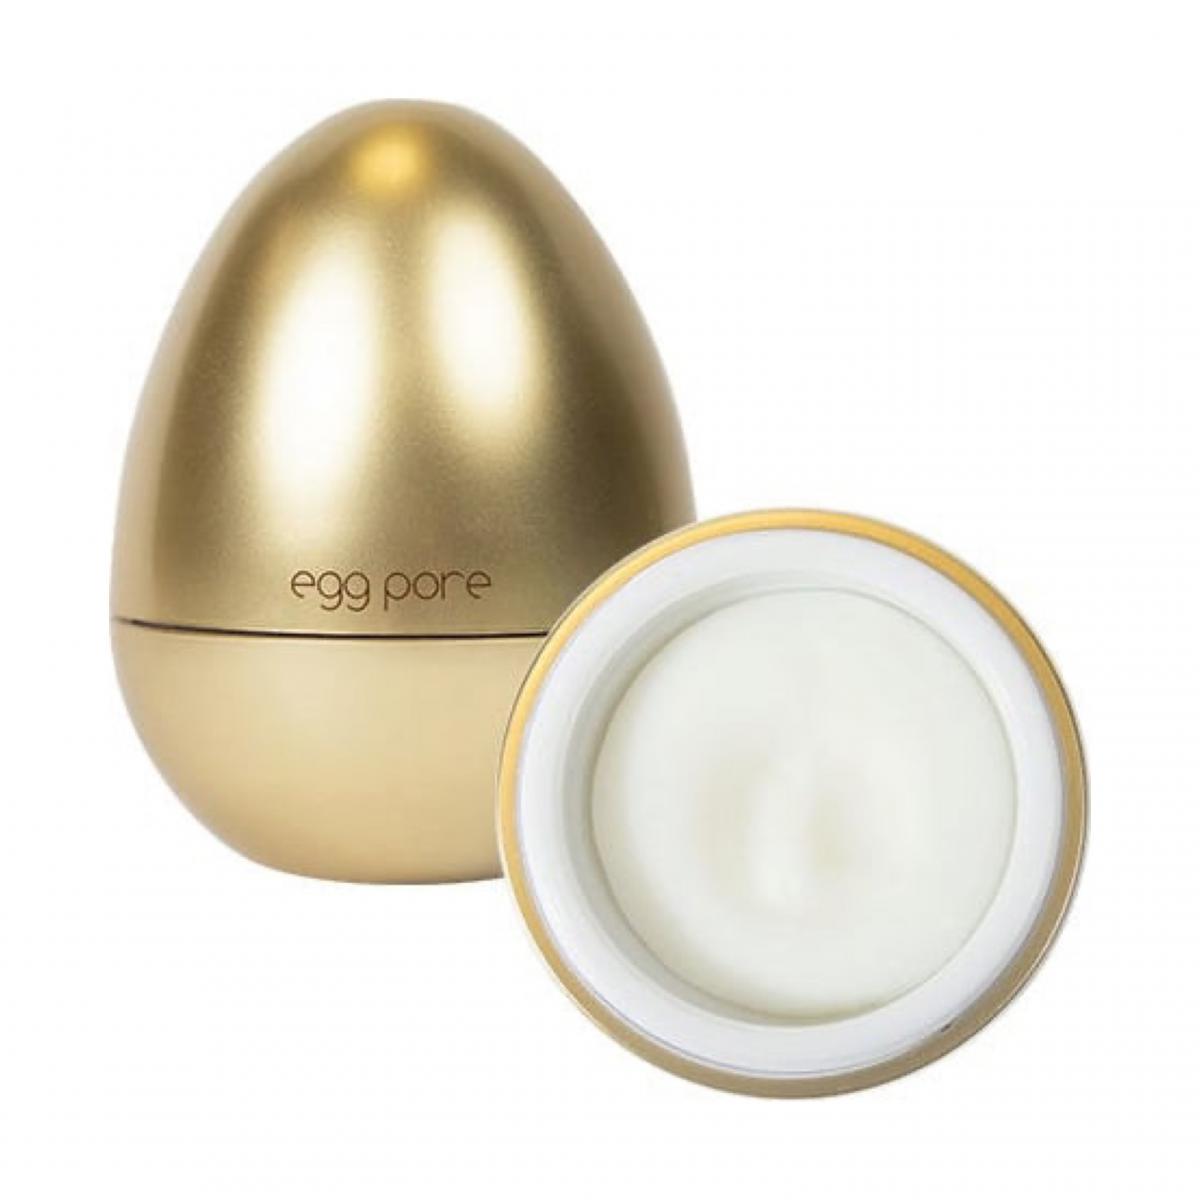 پرایمر مخصوص منافذ - Egg pore primer